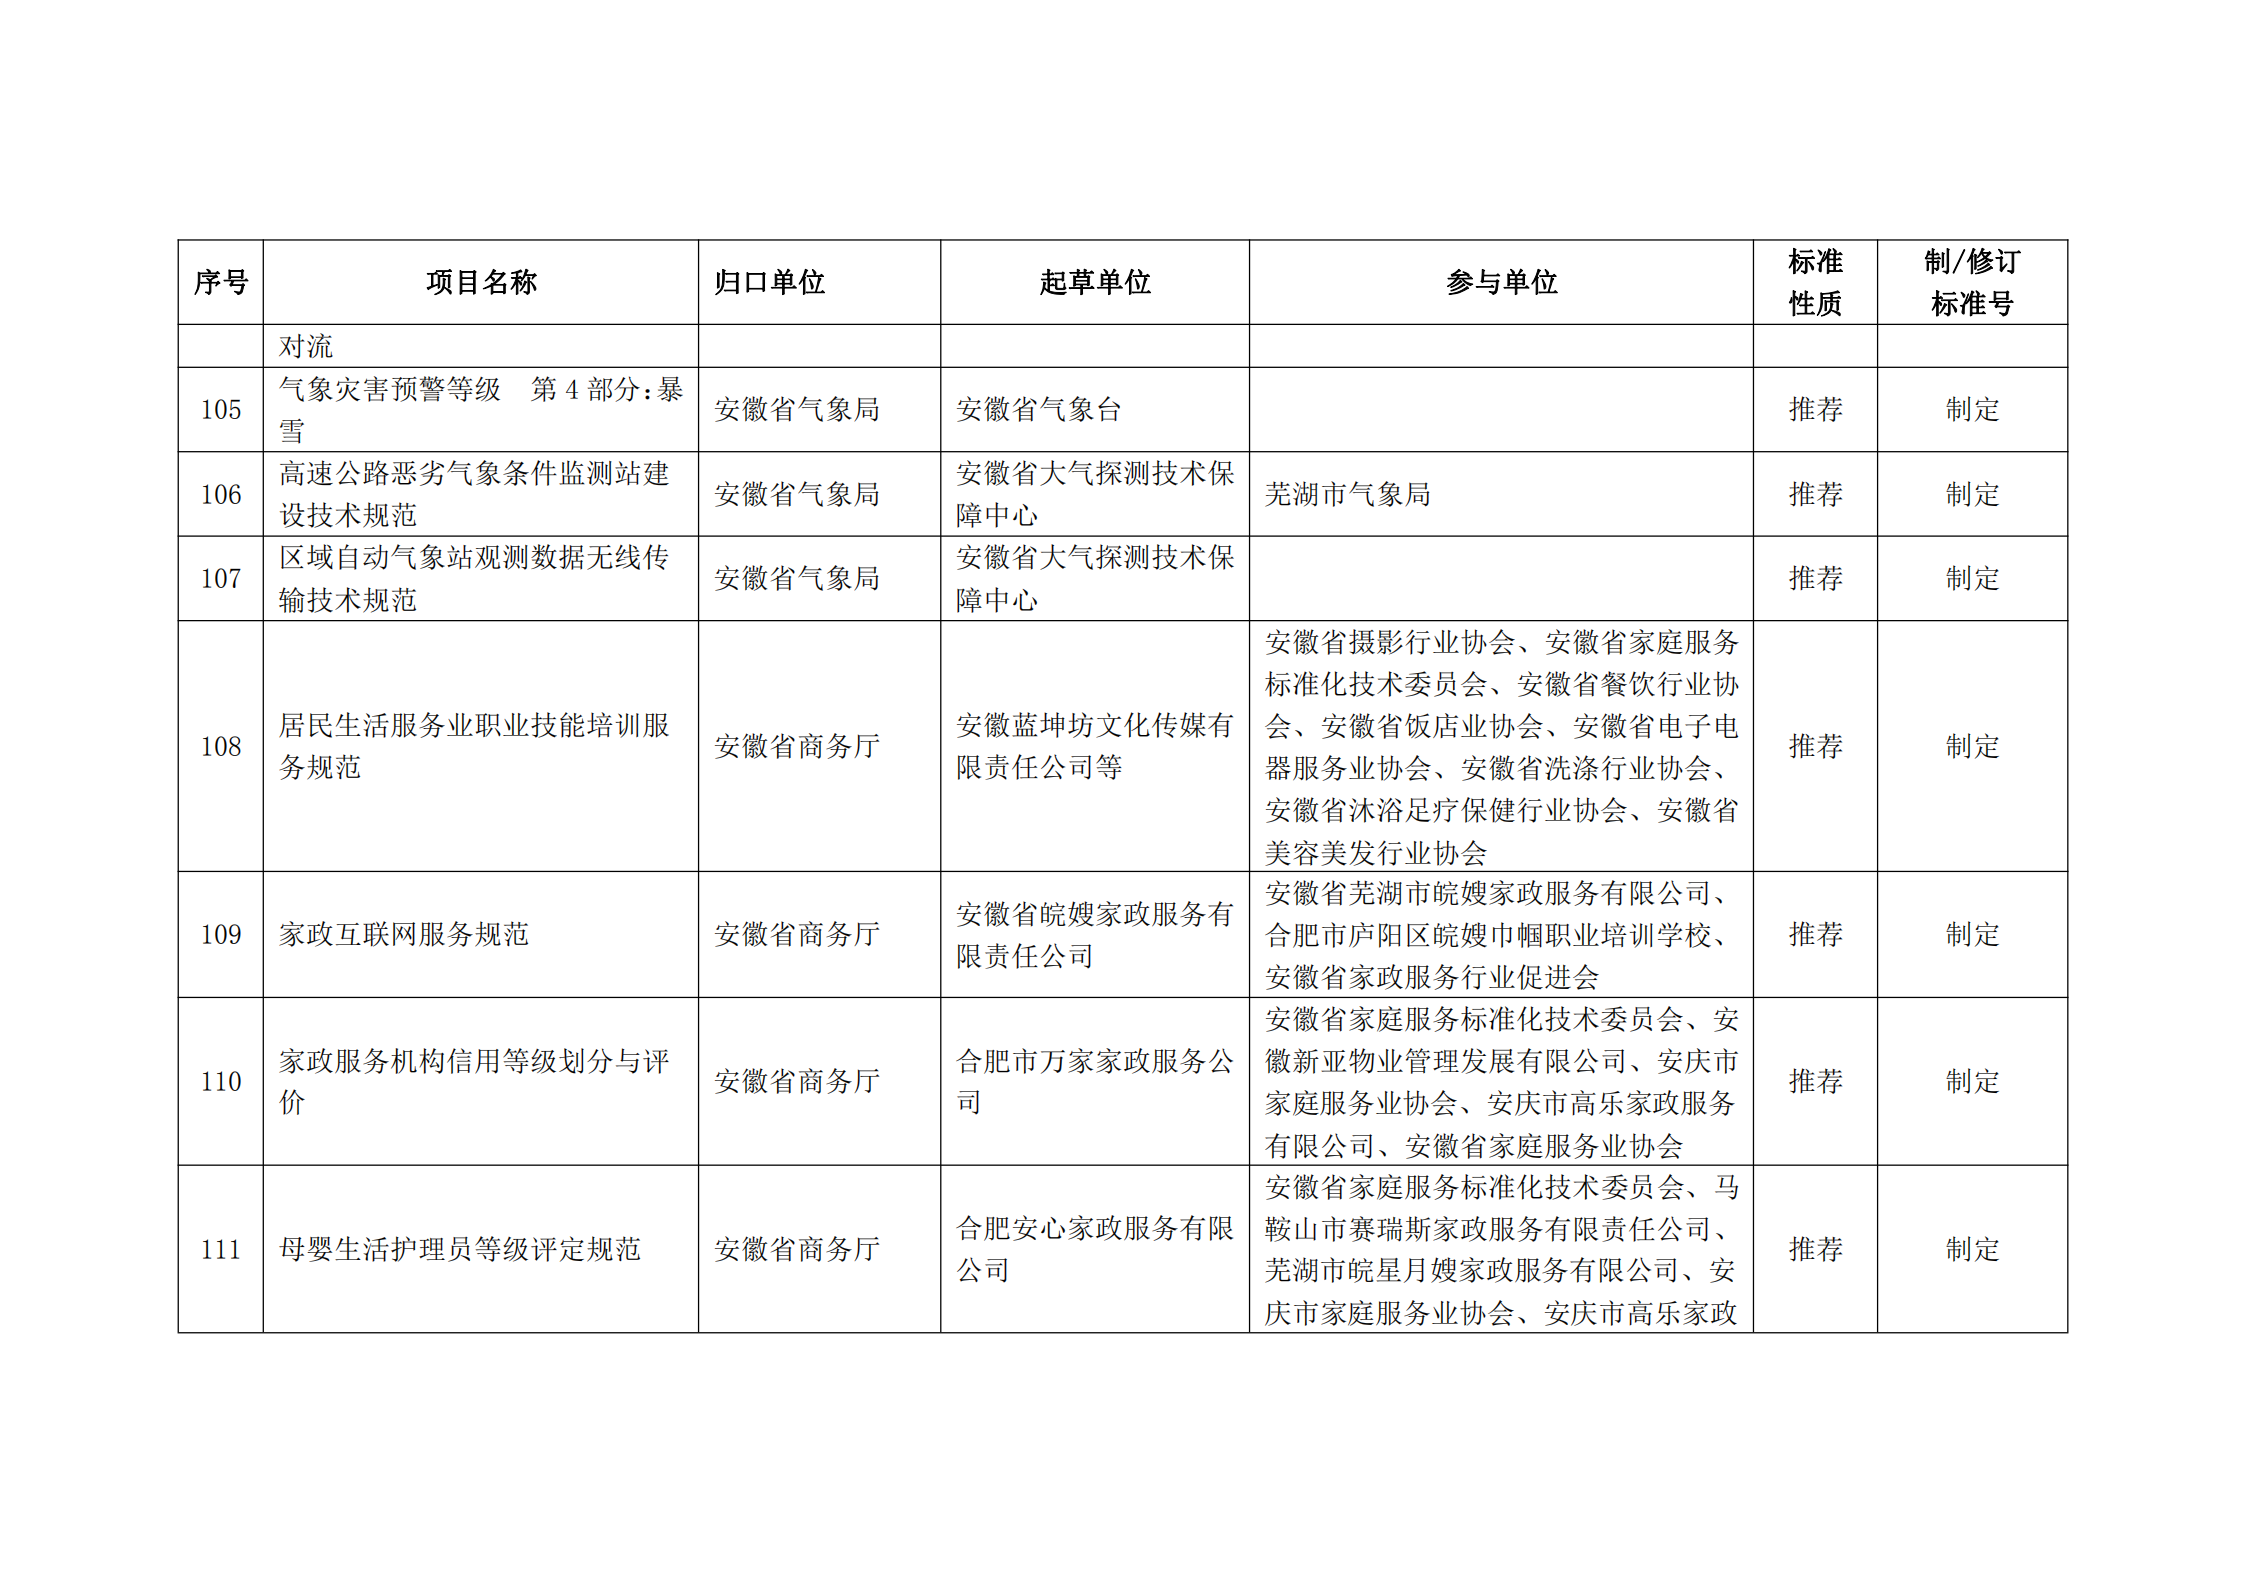 2020 年第二批安徽省地方标准制、修订计划项目汇总表(图12)